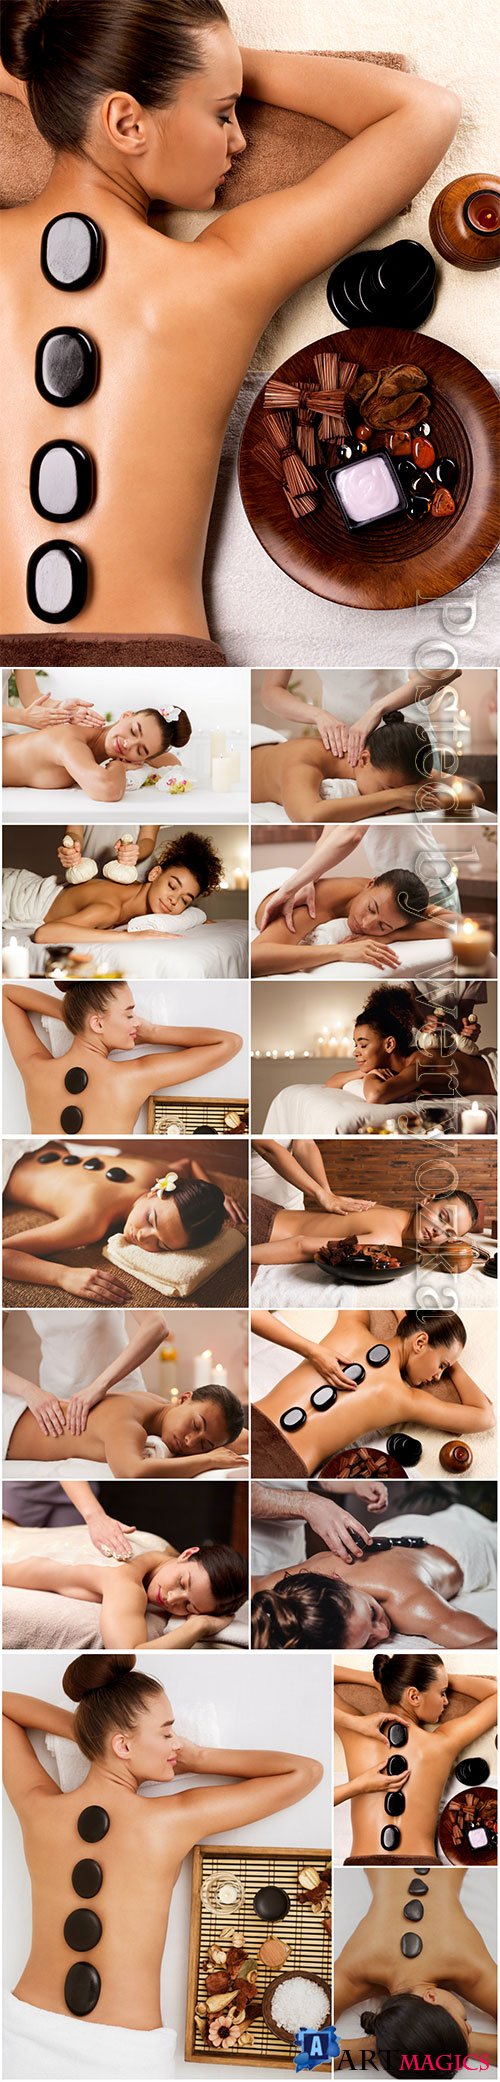 Spa treatments, massage girls beautiful stock photo